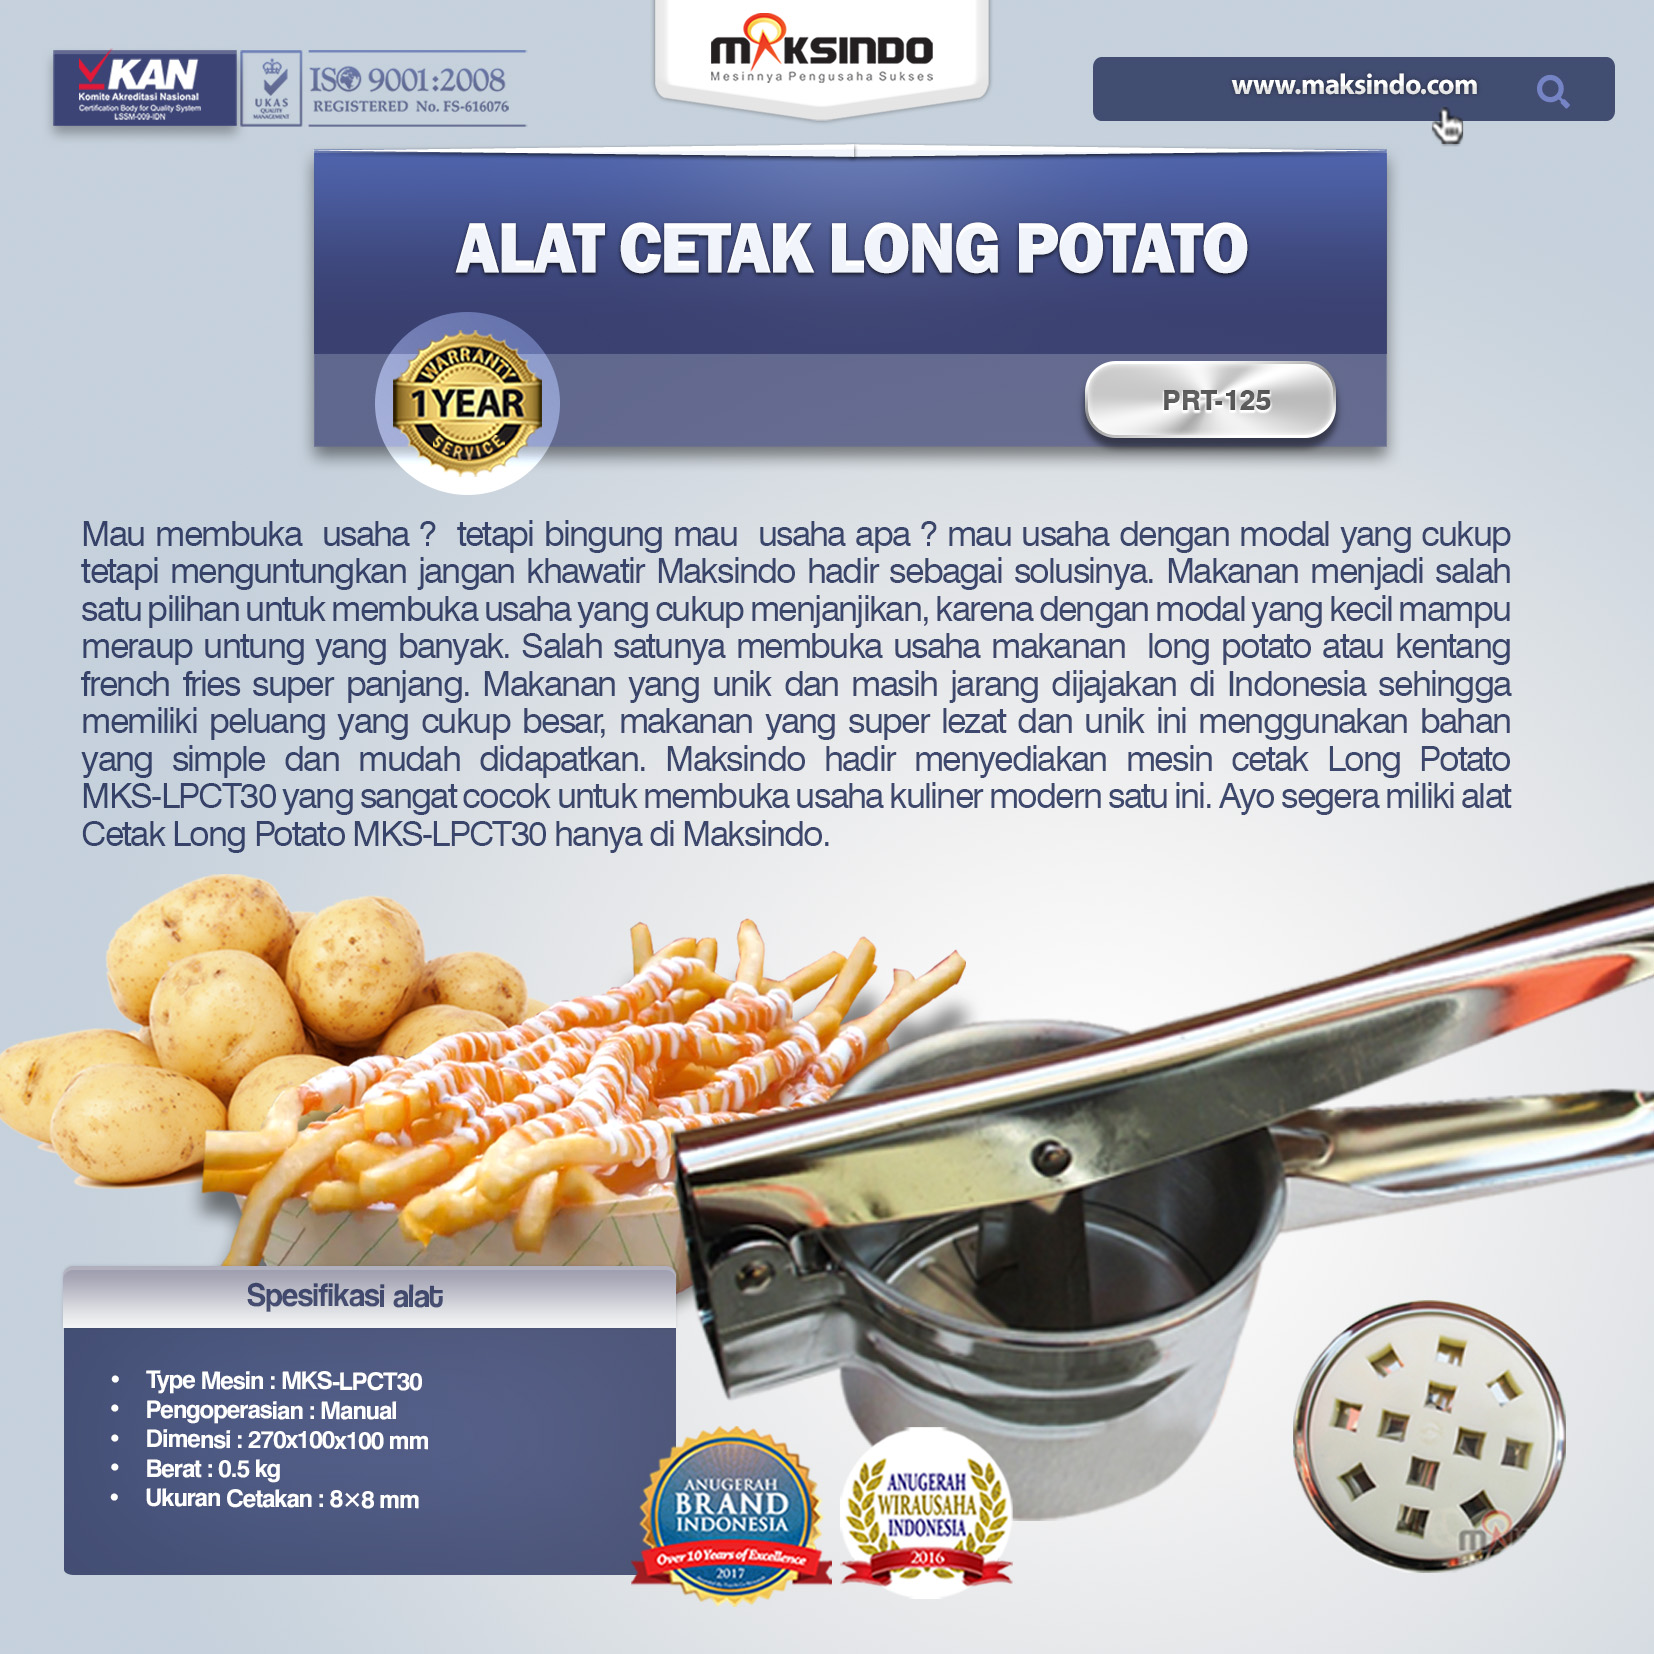 Alat Cetak Long Potato MKS-LPCT30